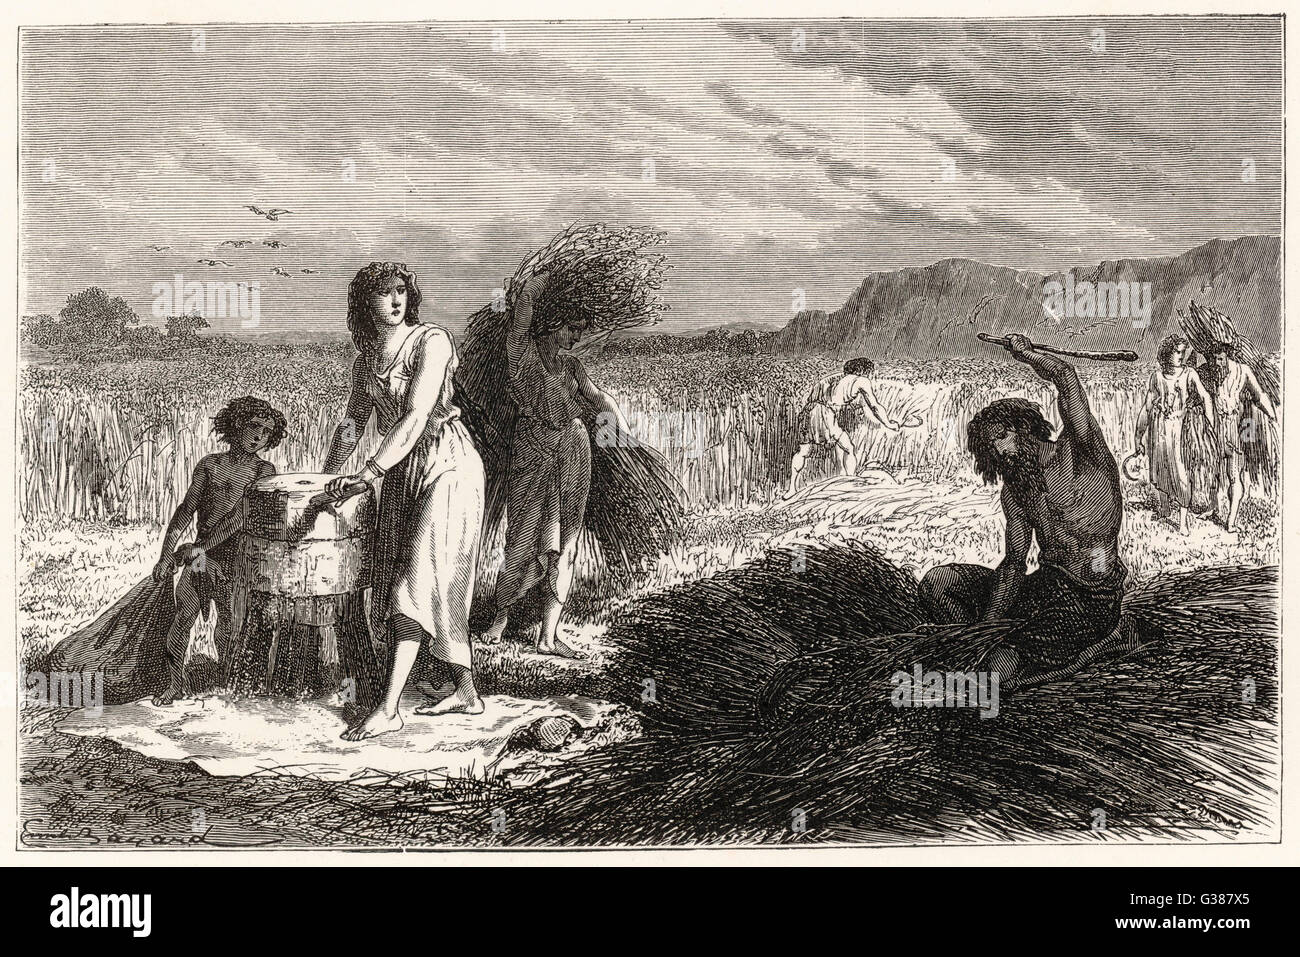 La agricultura de la edad de hierro - cosecha maíz Fecha: circa 1000 A.C. Foto de stock